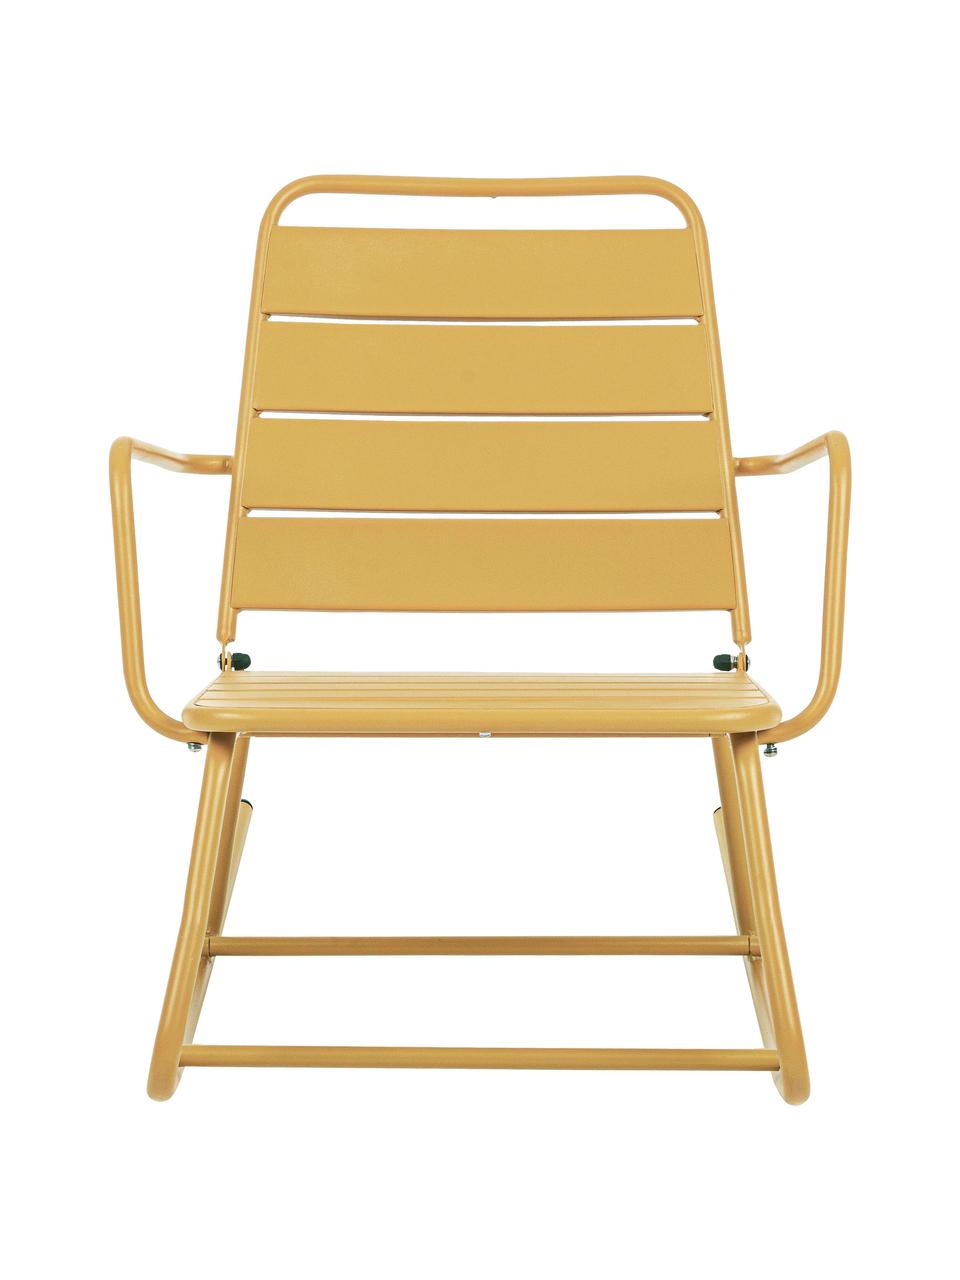 Záhradní houpací židle Lillian, Ocel s práškovým nástřikem, Okrová žlutá, Š 63 cm, V 74 cm